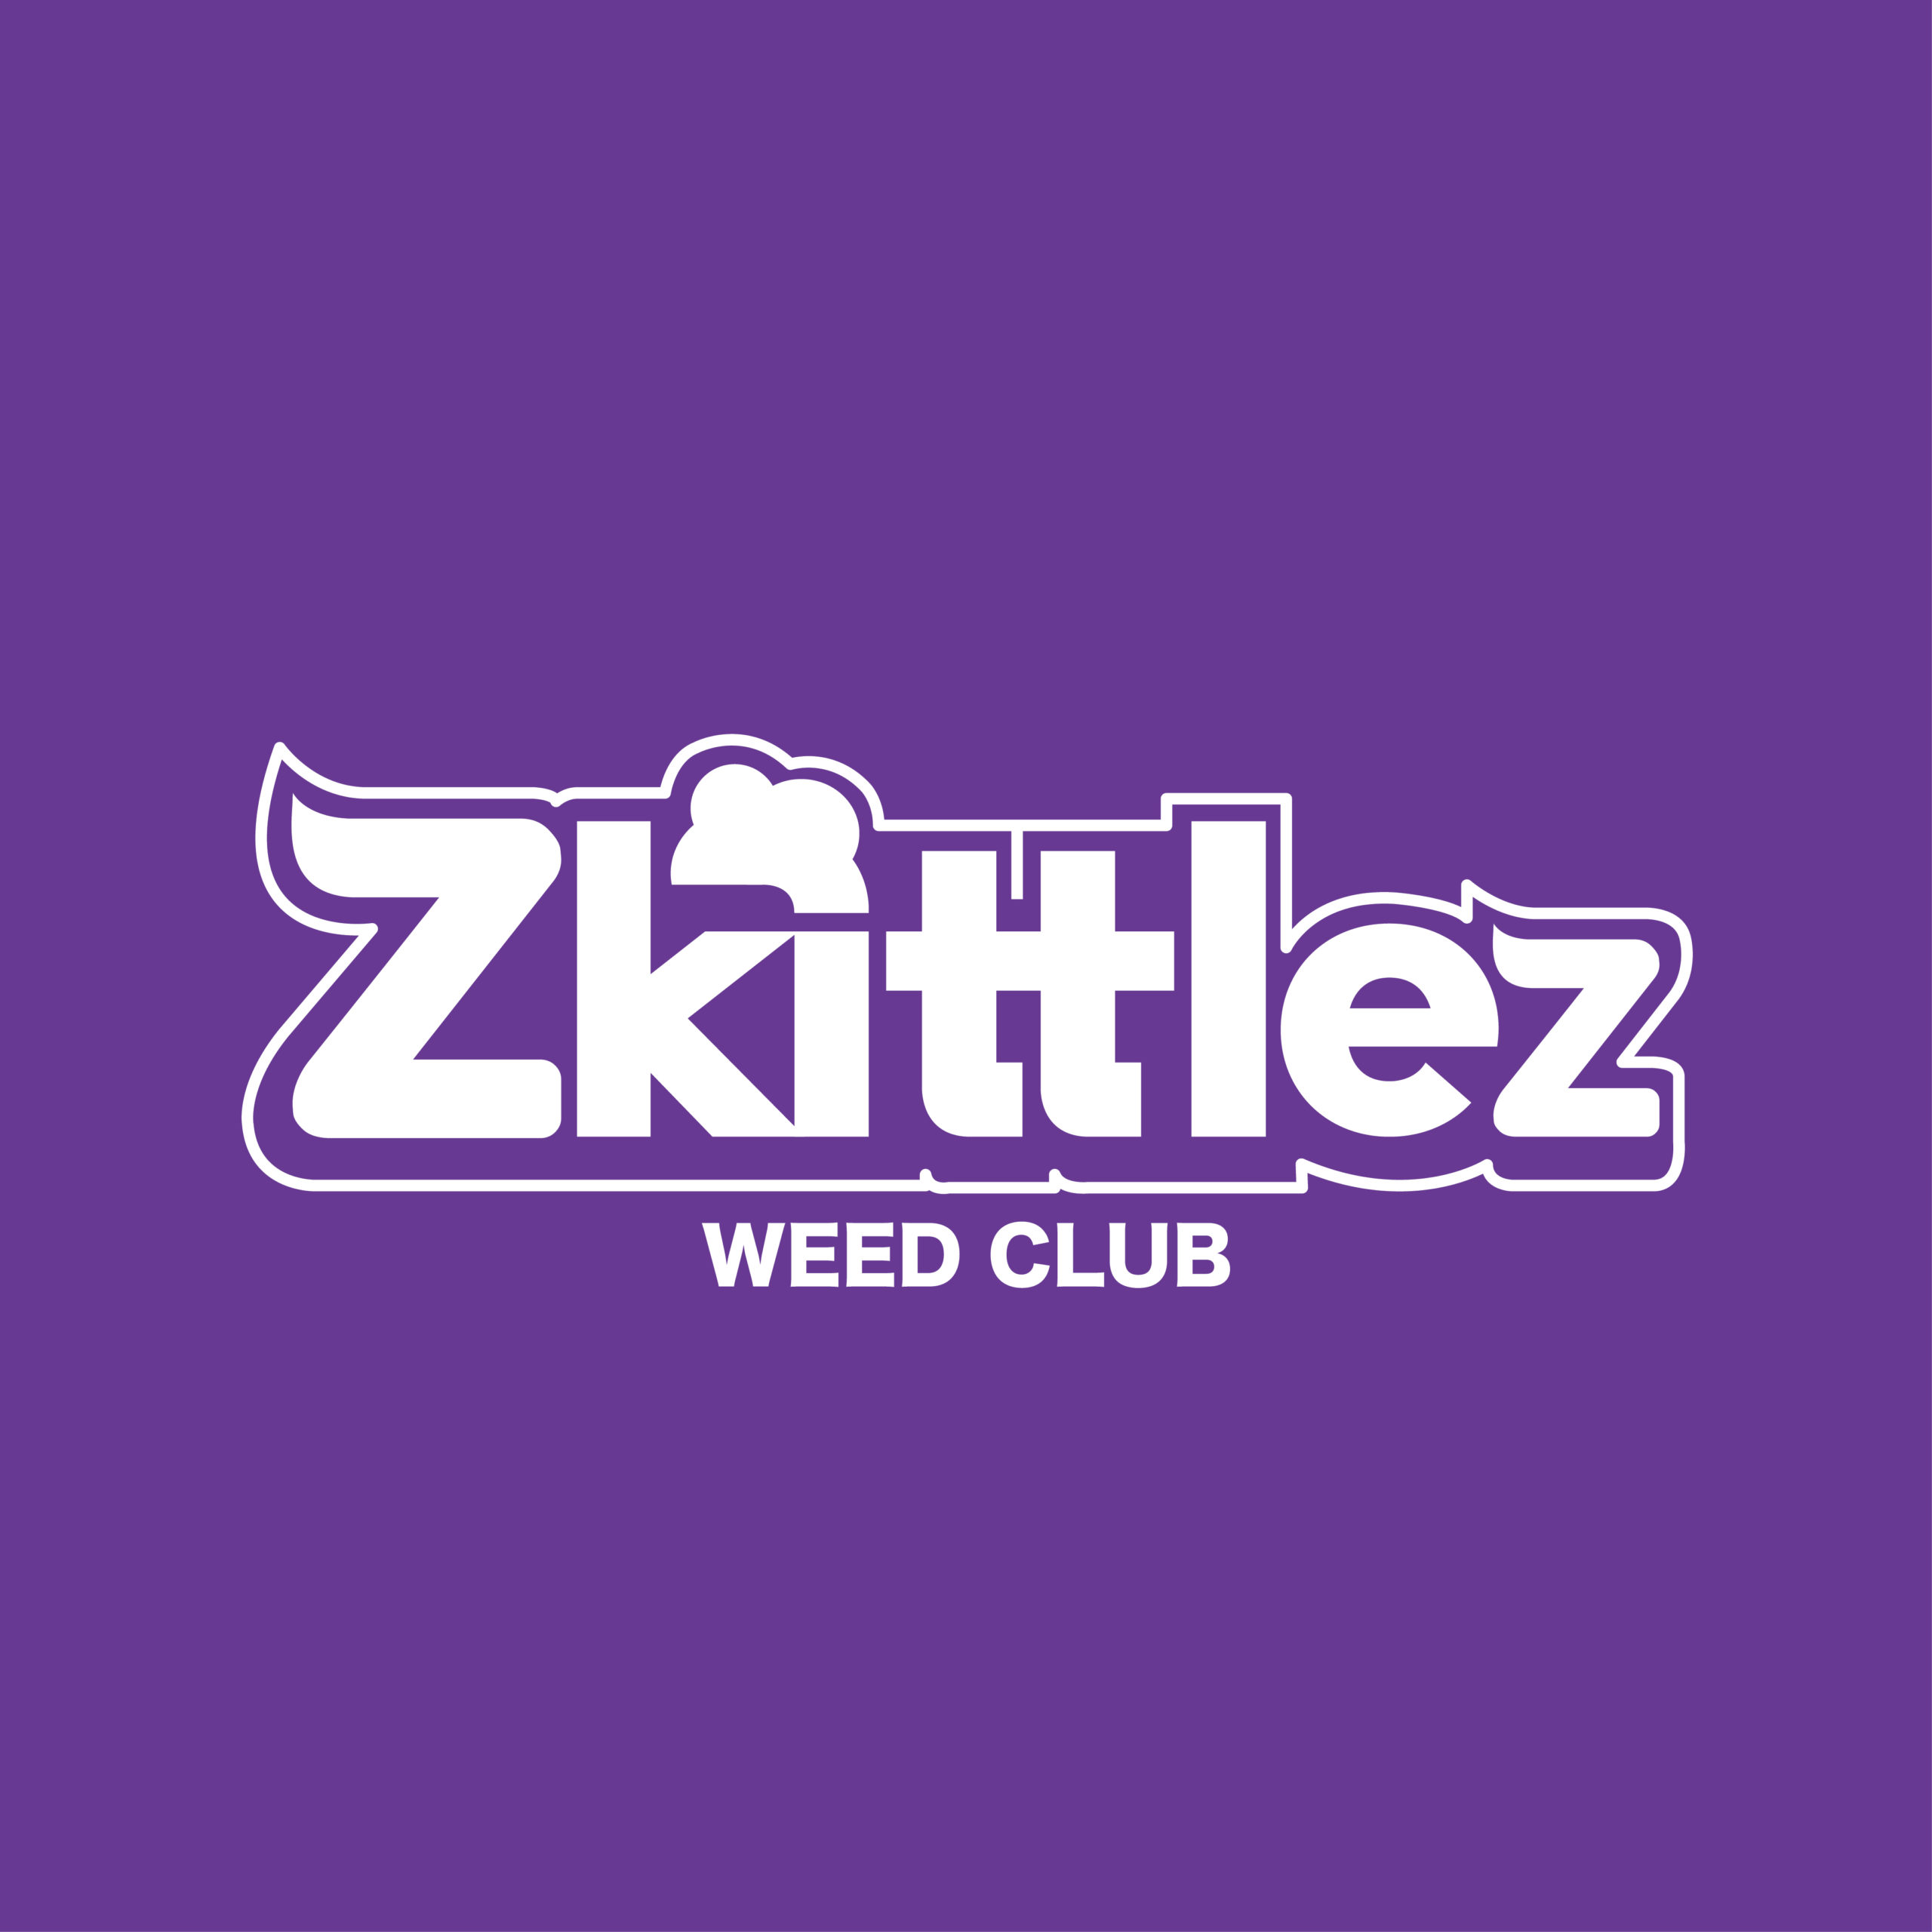 Zkittlez Weed Club Barcelona